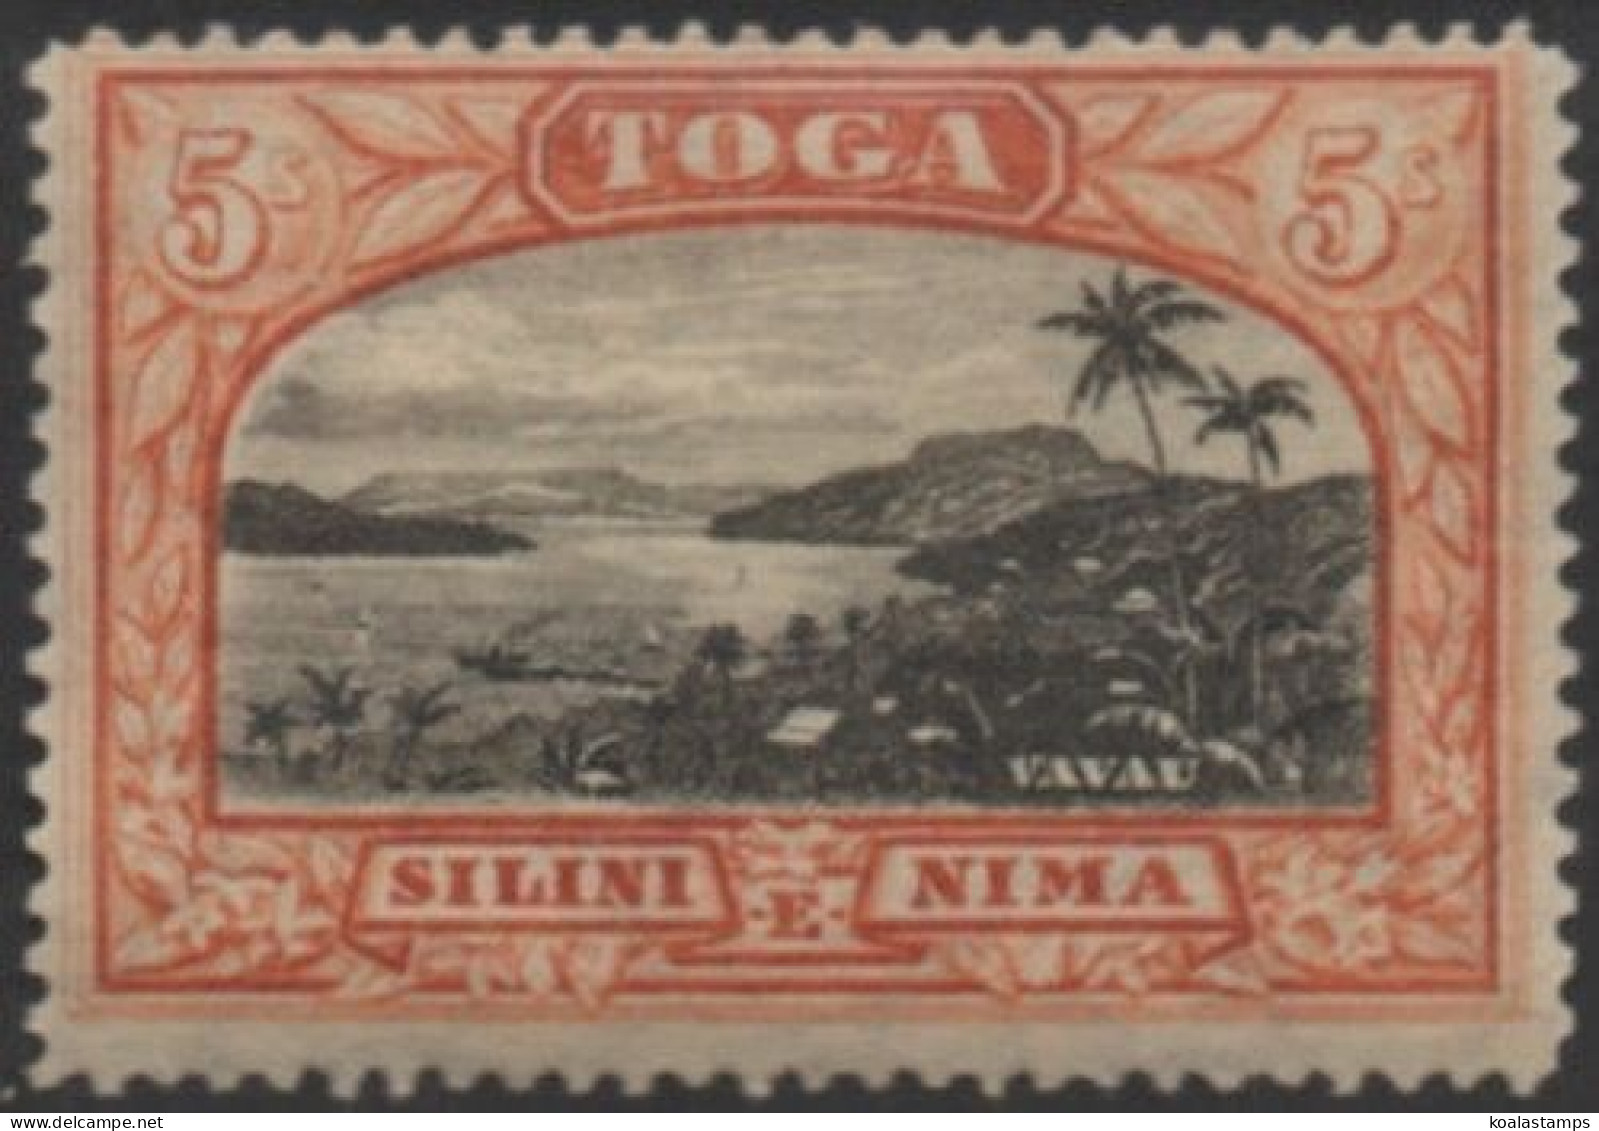 Tonga 1897 SG53a 5/- Vavau Harbour MH - Tonga (1970-...)